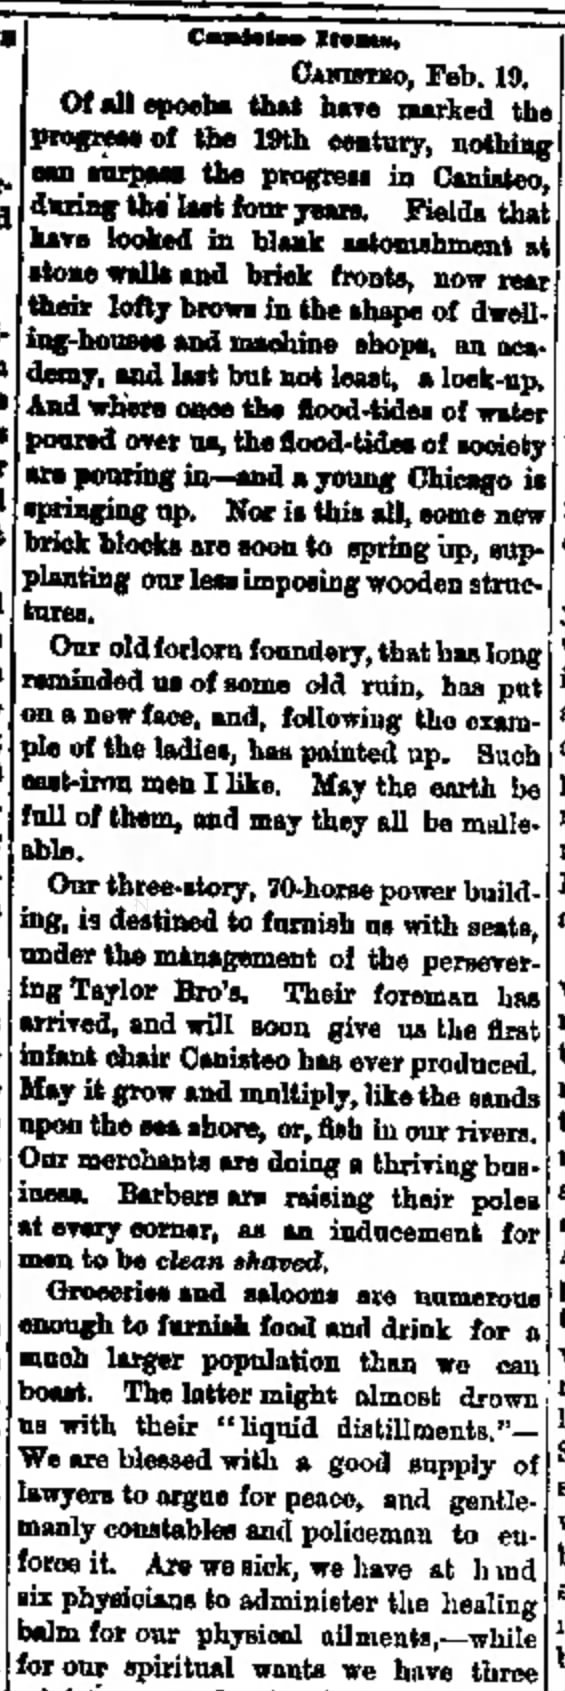 Hornellsville Weekly Tribune
Hornellsville, NY
Friday, February 27, 1874
